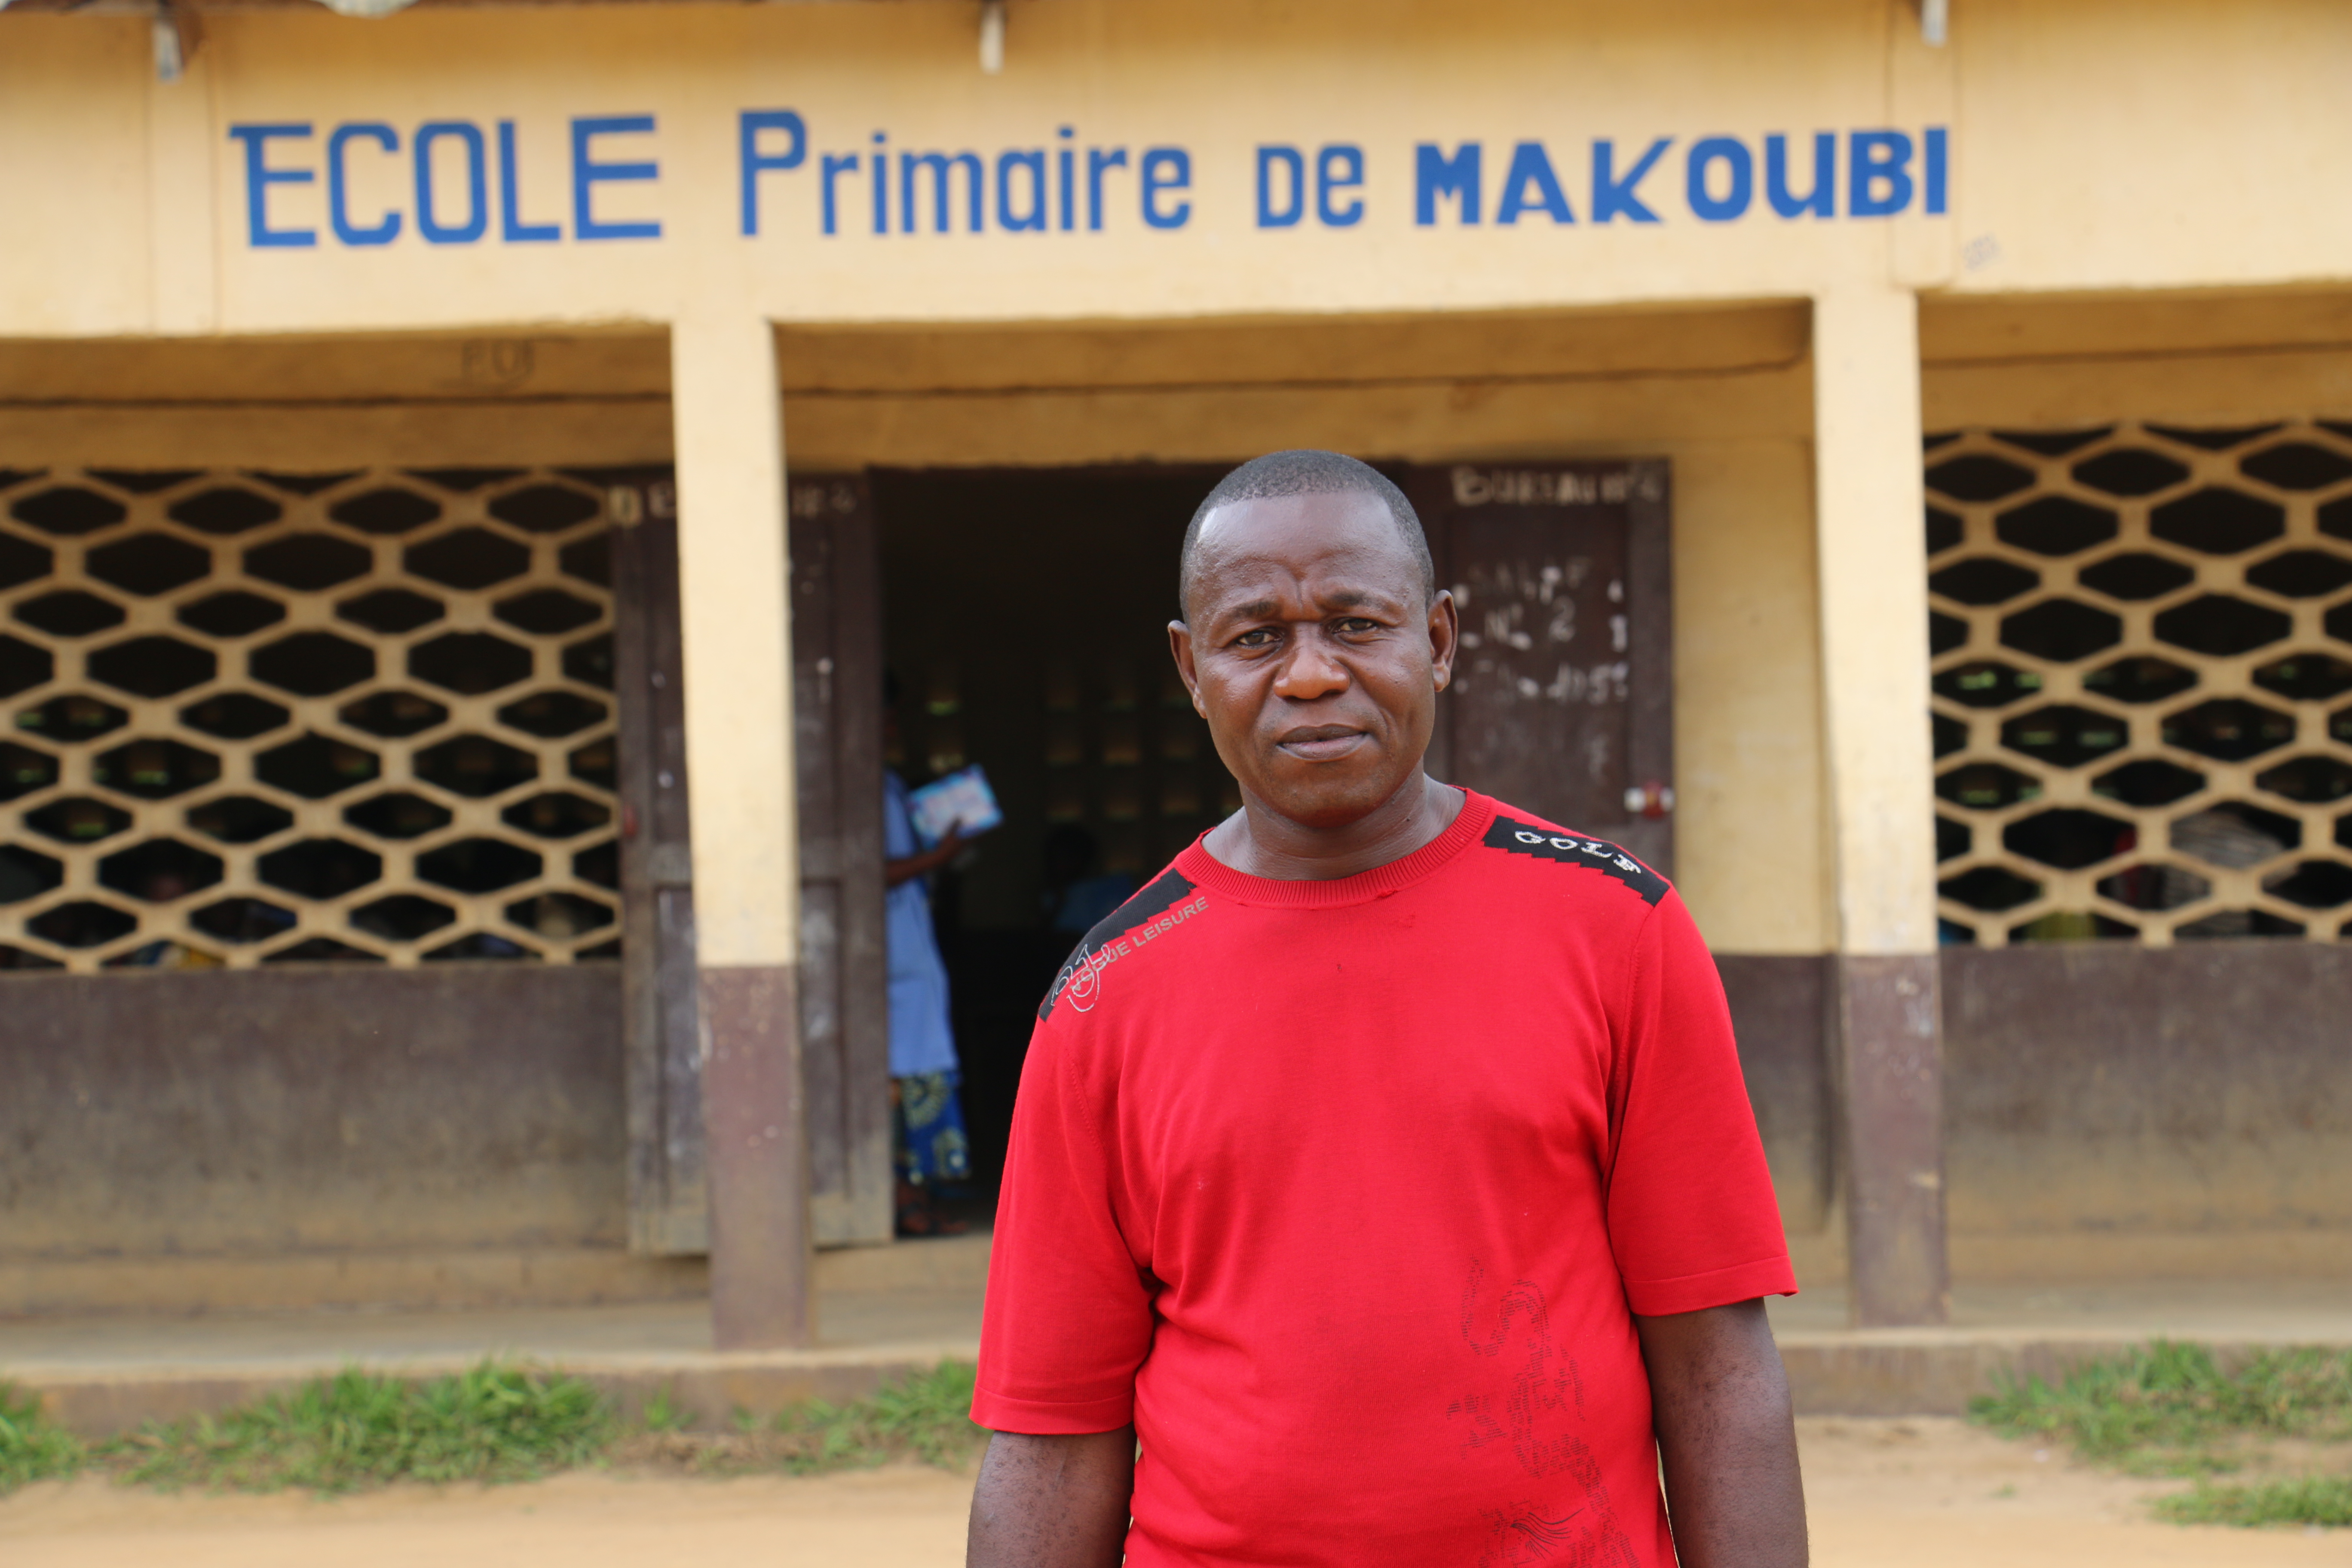 Photo: Boris Edebe Martial, President of the Makoubi Parents Teacher Association. WFP/Cécile Mercier